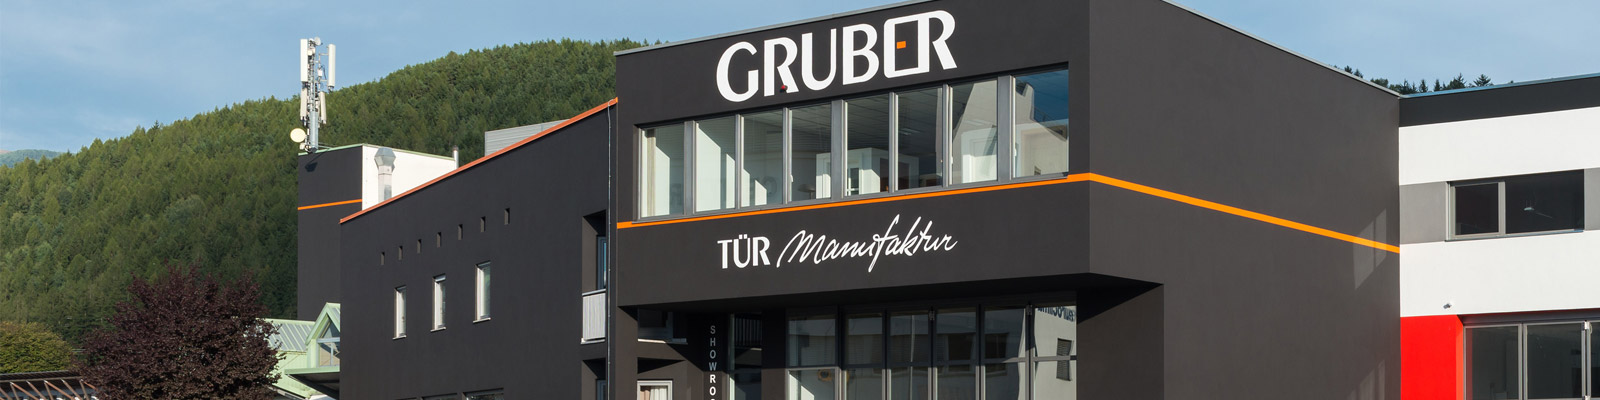 Gruber, Bruneck